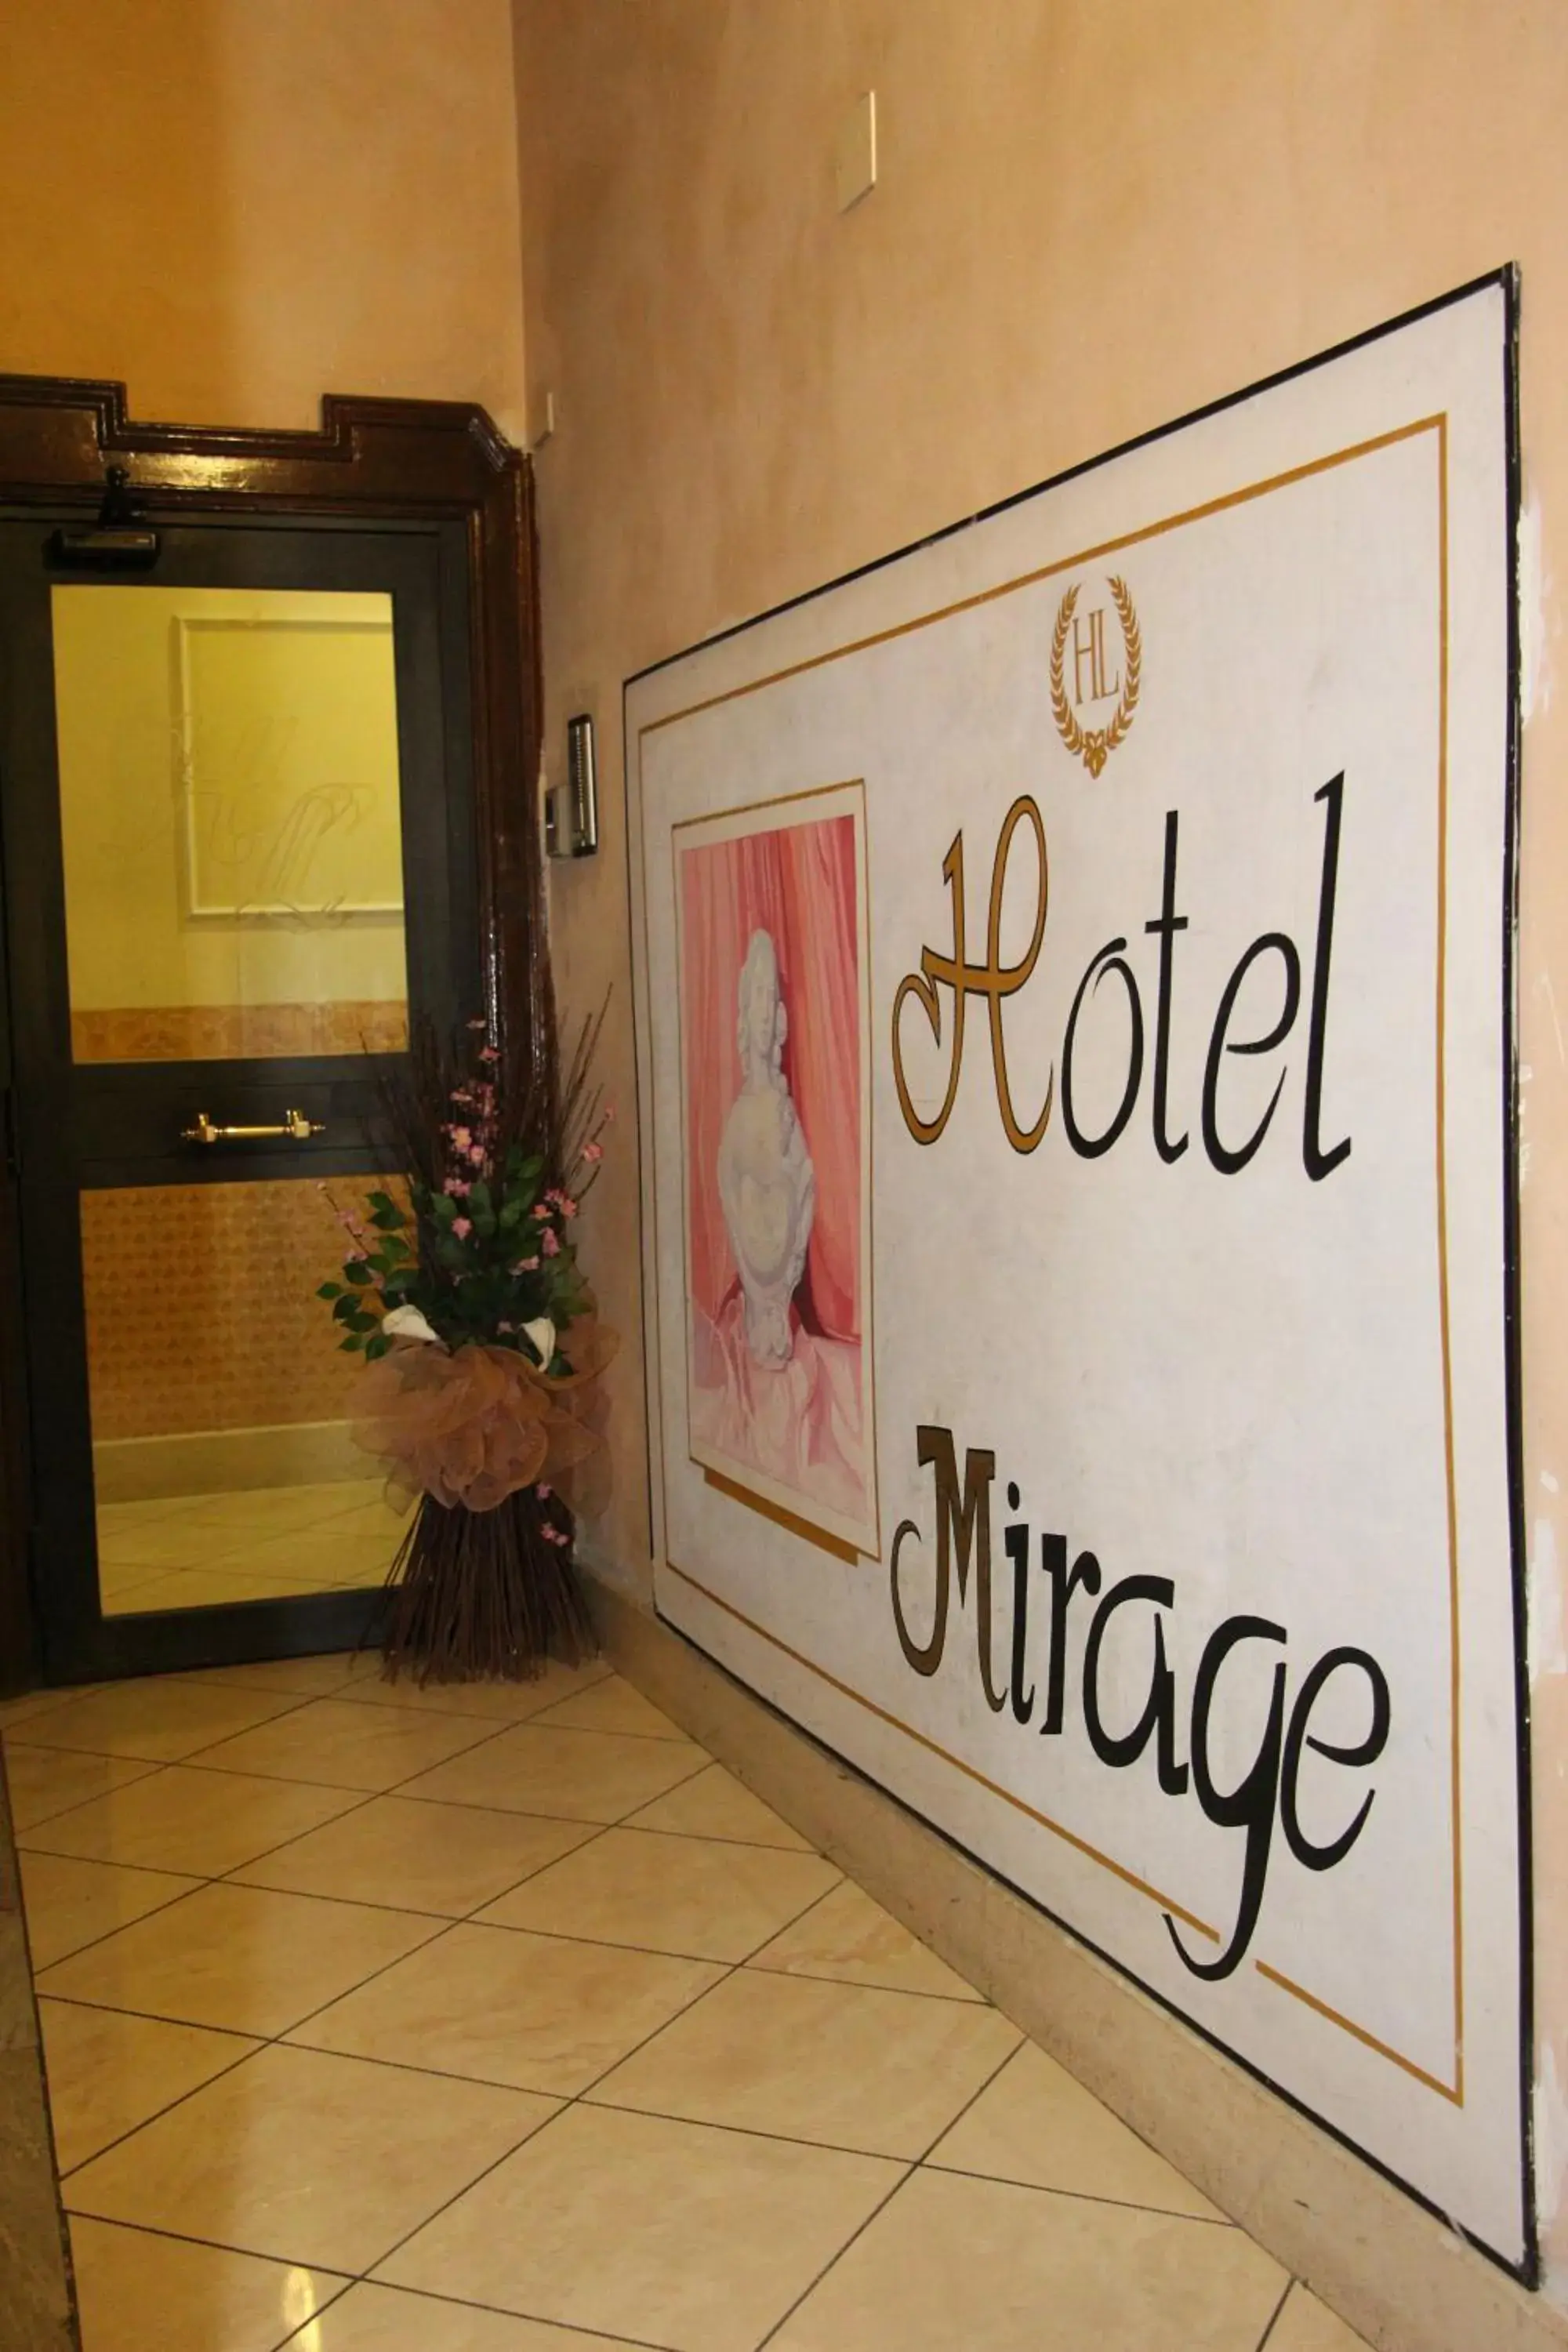 Decorative detail in Hotel Mirage